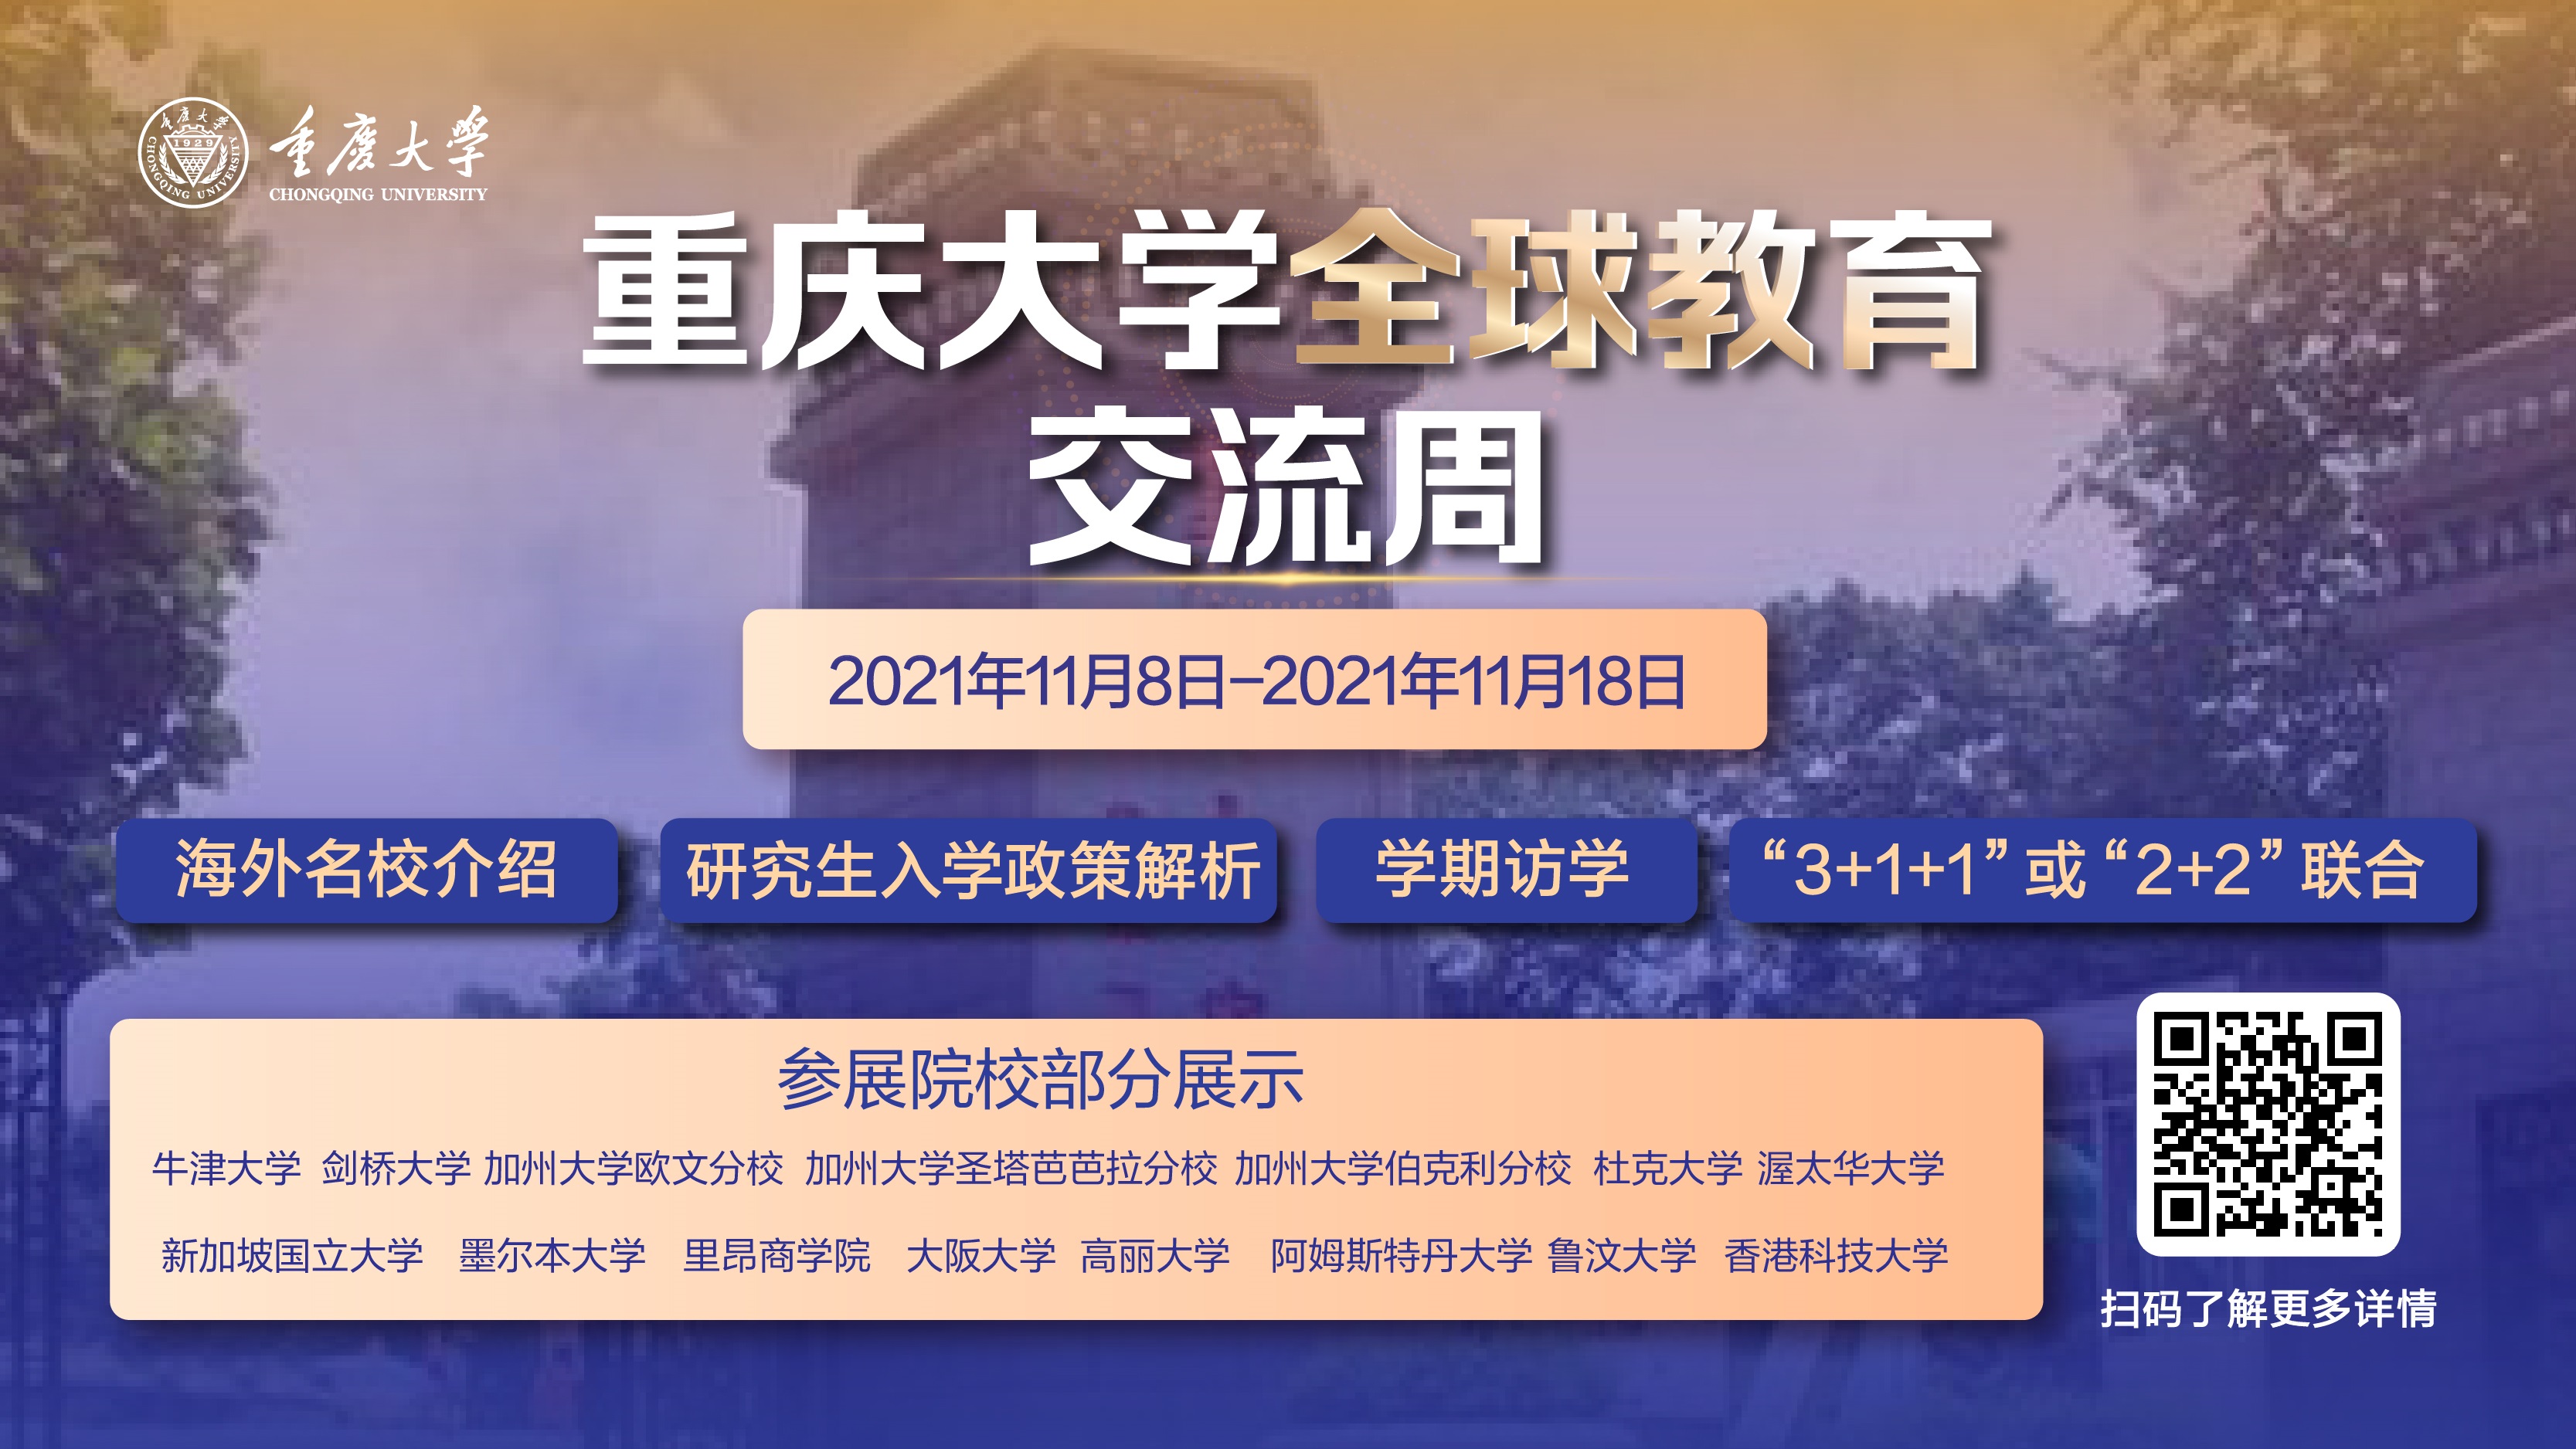 重庆大学全球教育交流周宣传图片.jpg